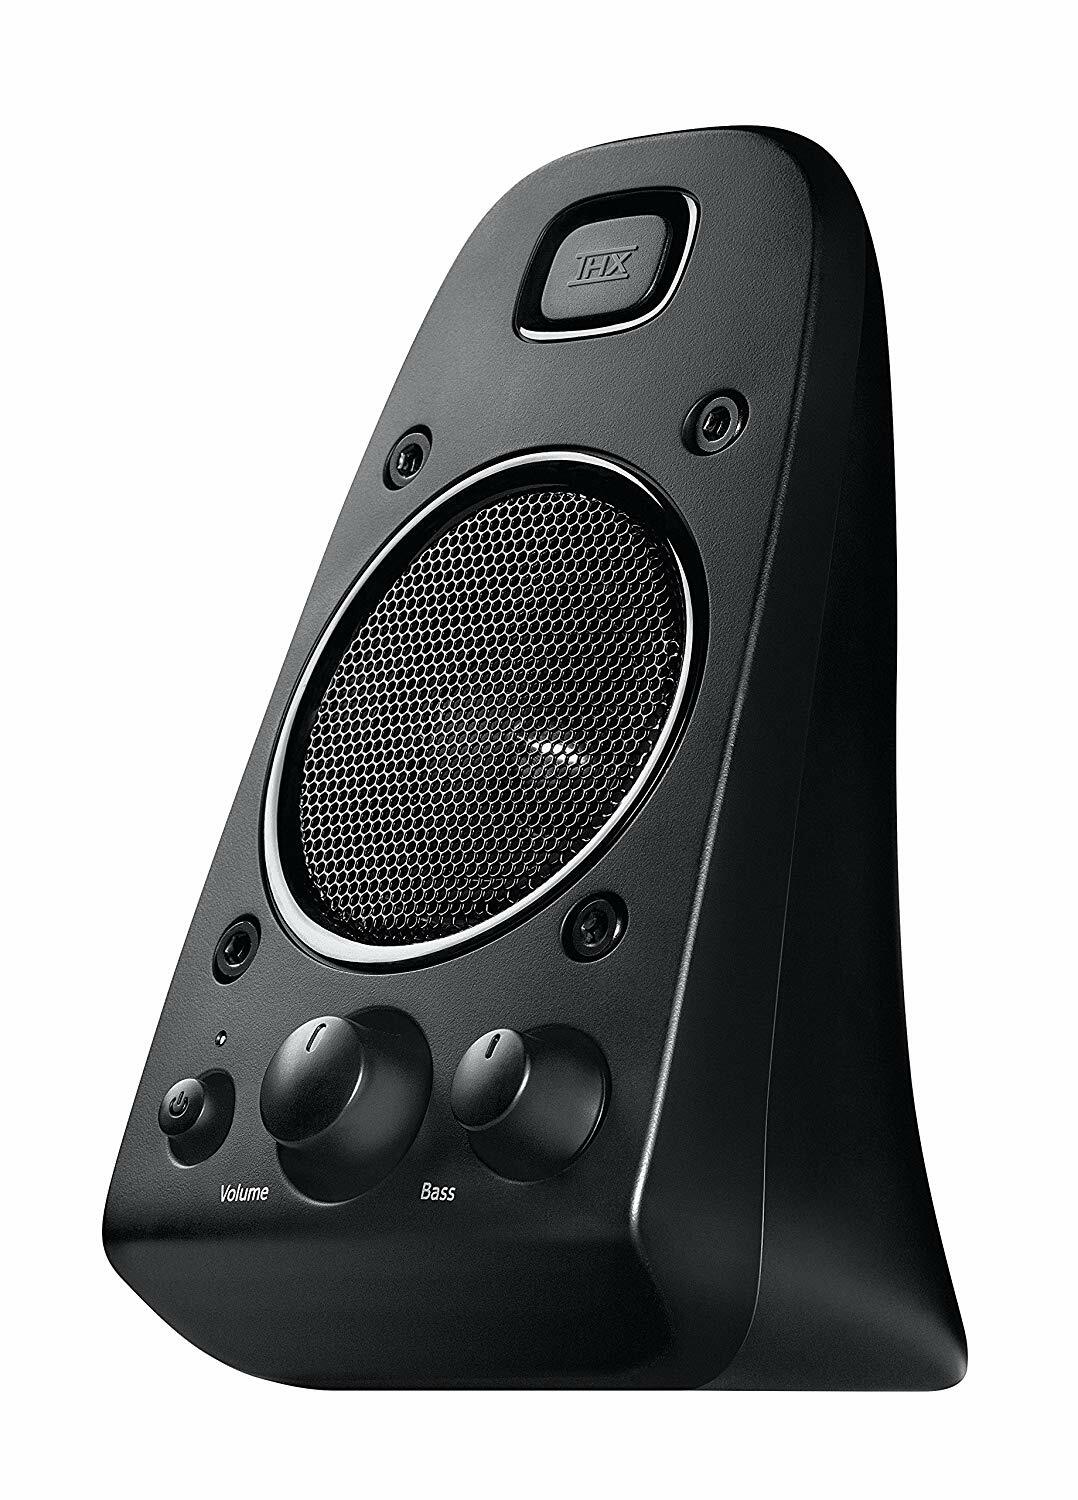 Speakers Logitech Z623 / 2.1 / 200W / 980-000403 / Black